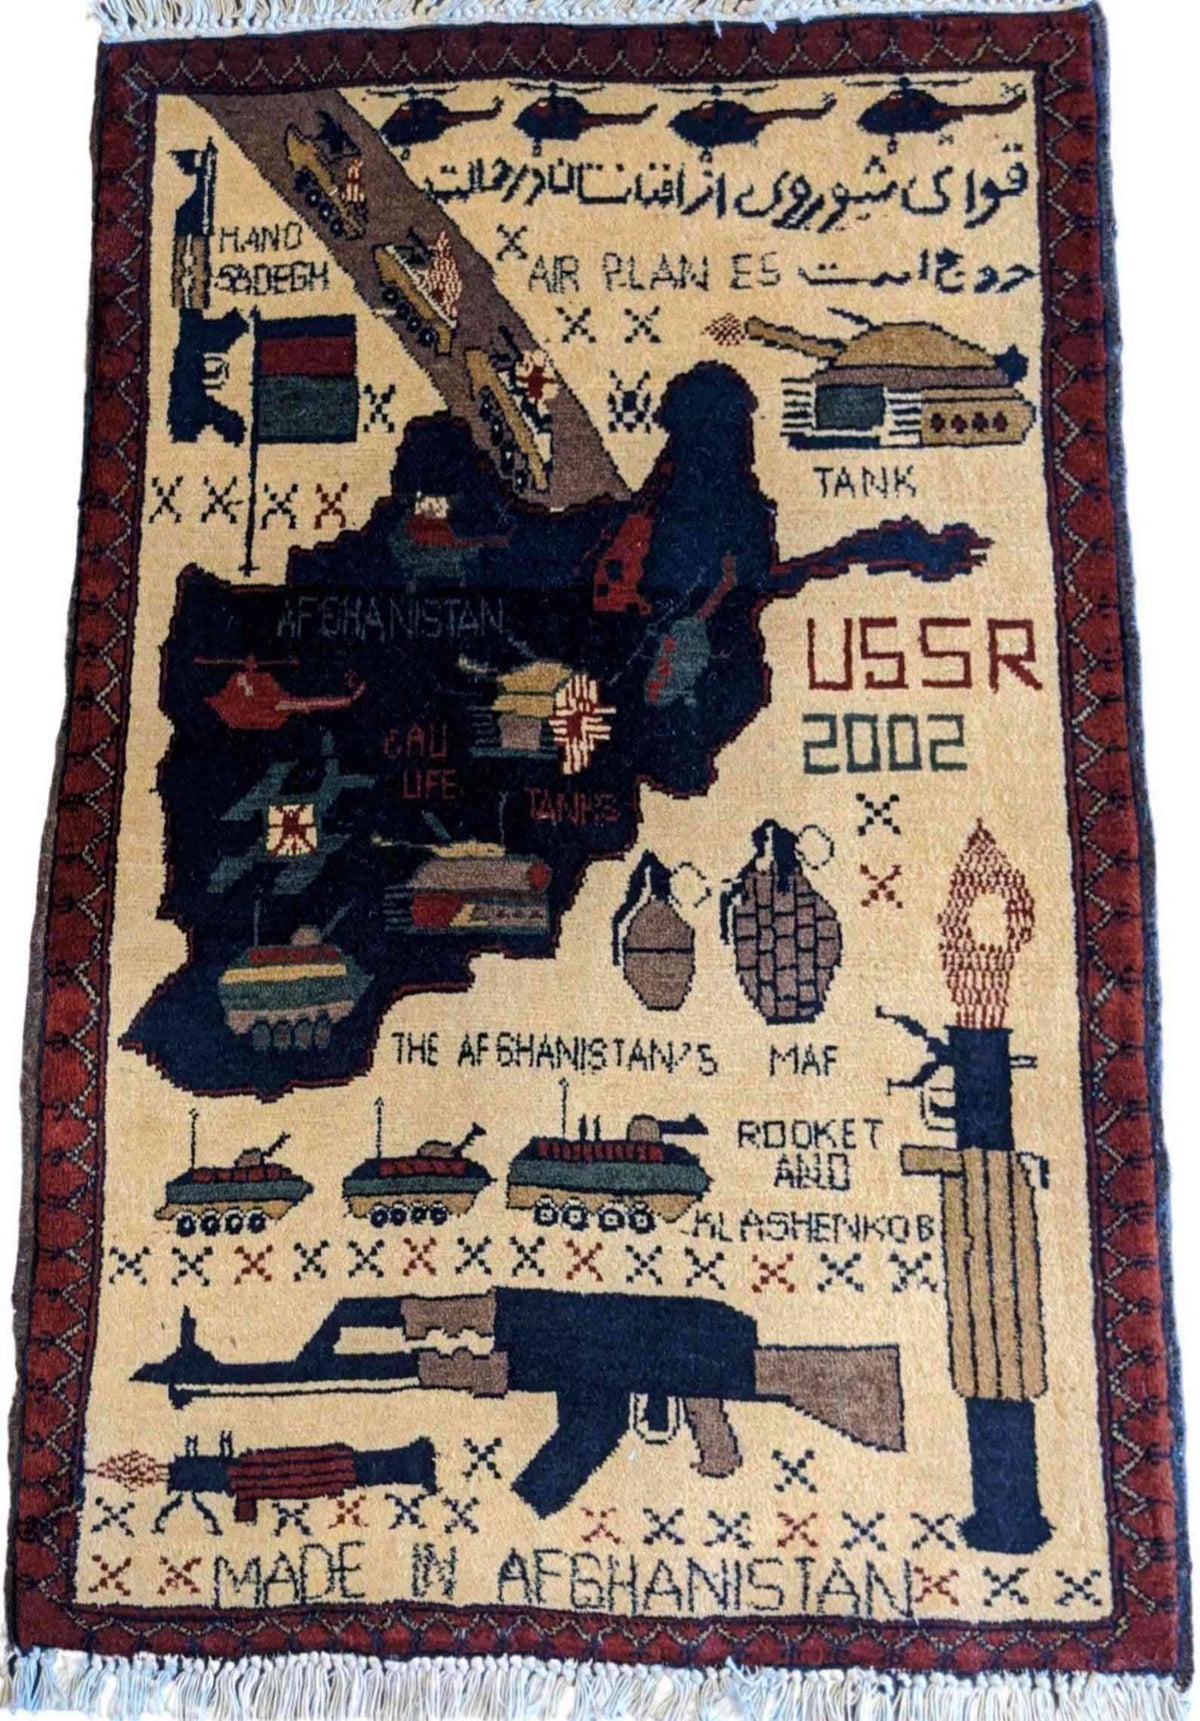 Afghan war rug